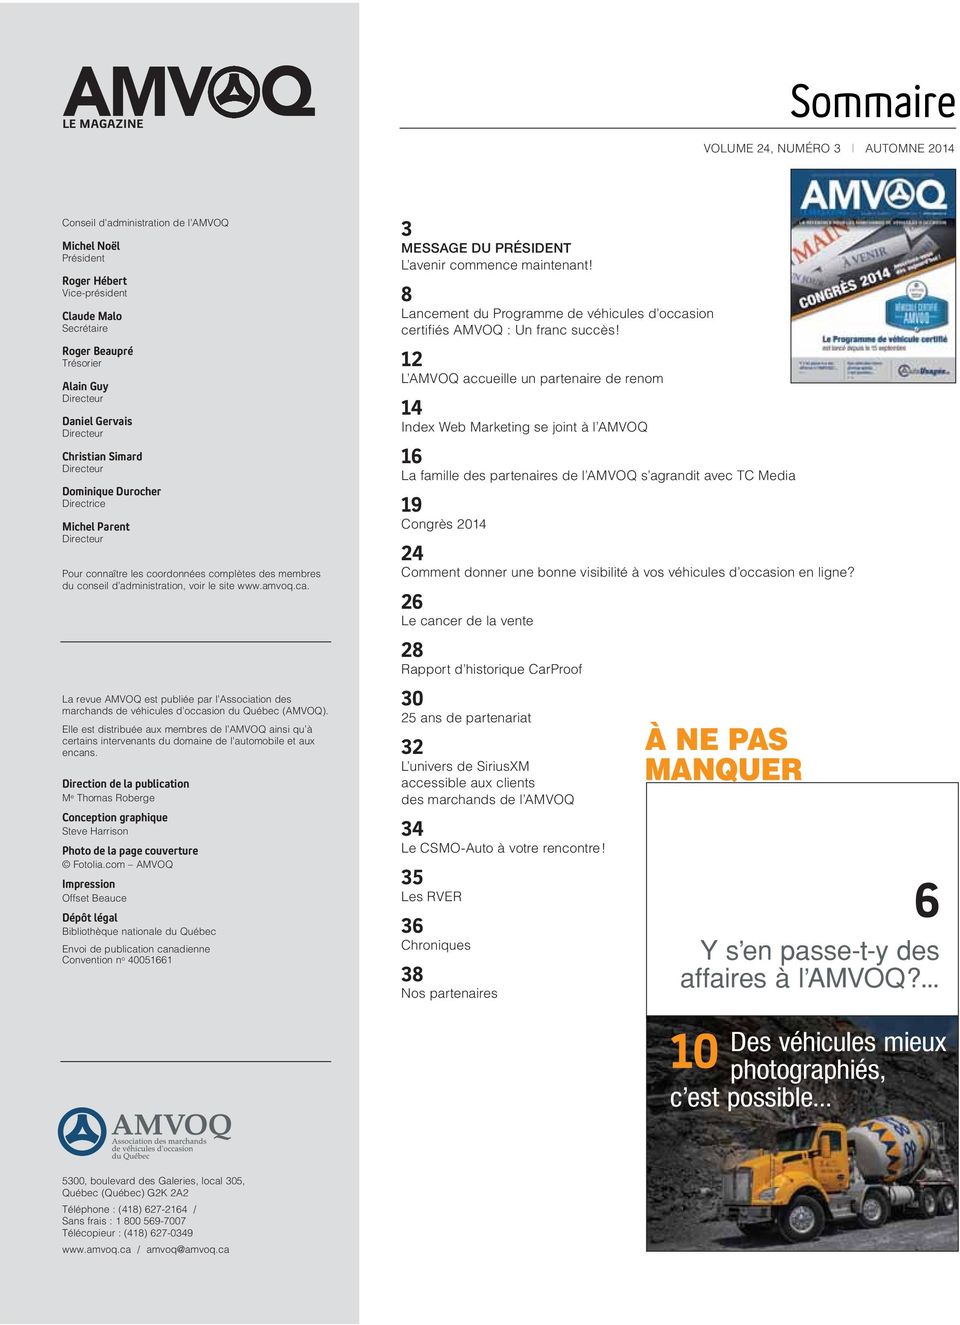 administration, voir le site www.amvoq.ca. La revue AMVOQ est publiée par l Association des marchands de véhicules d occasion du Québec (AMVOQ).